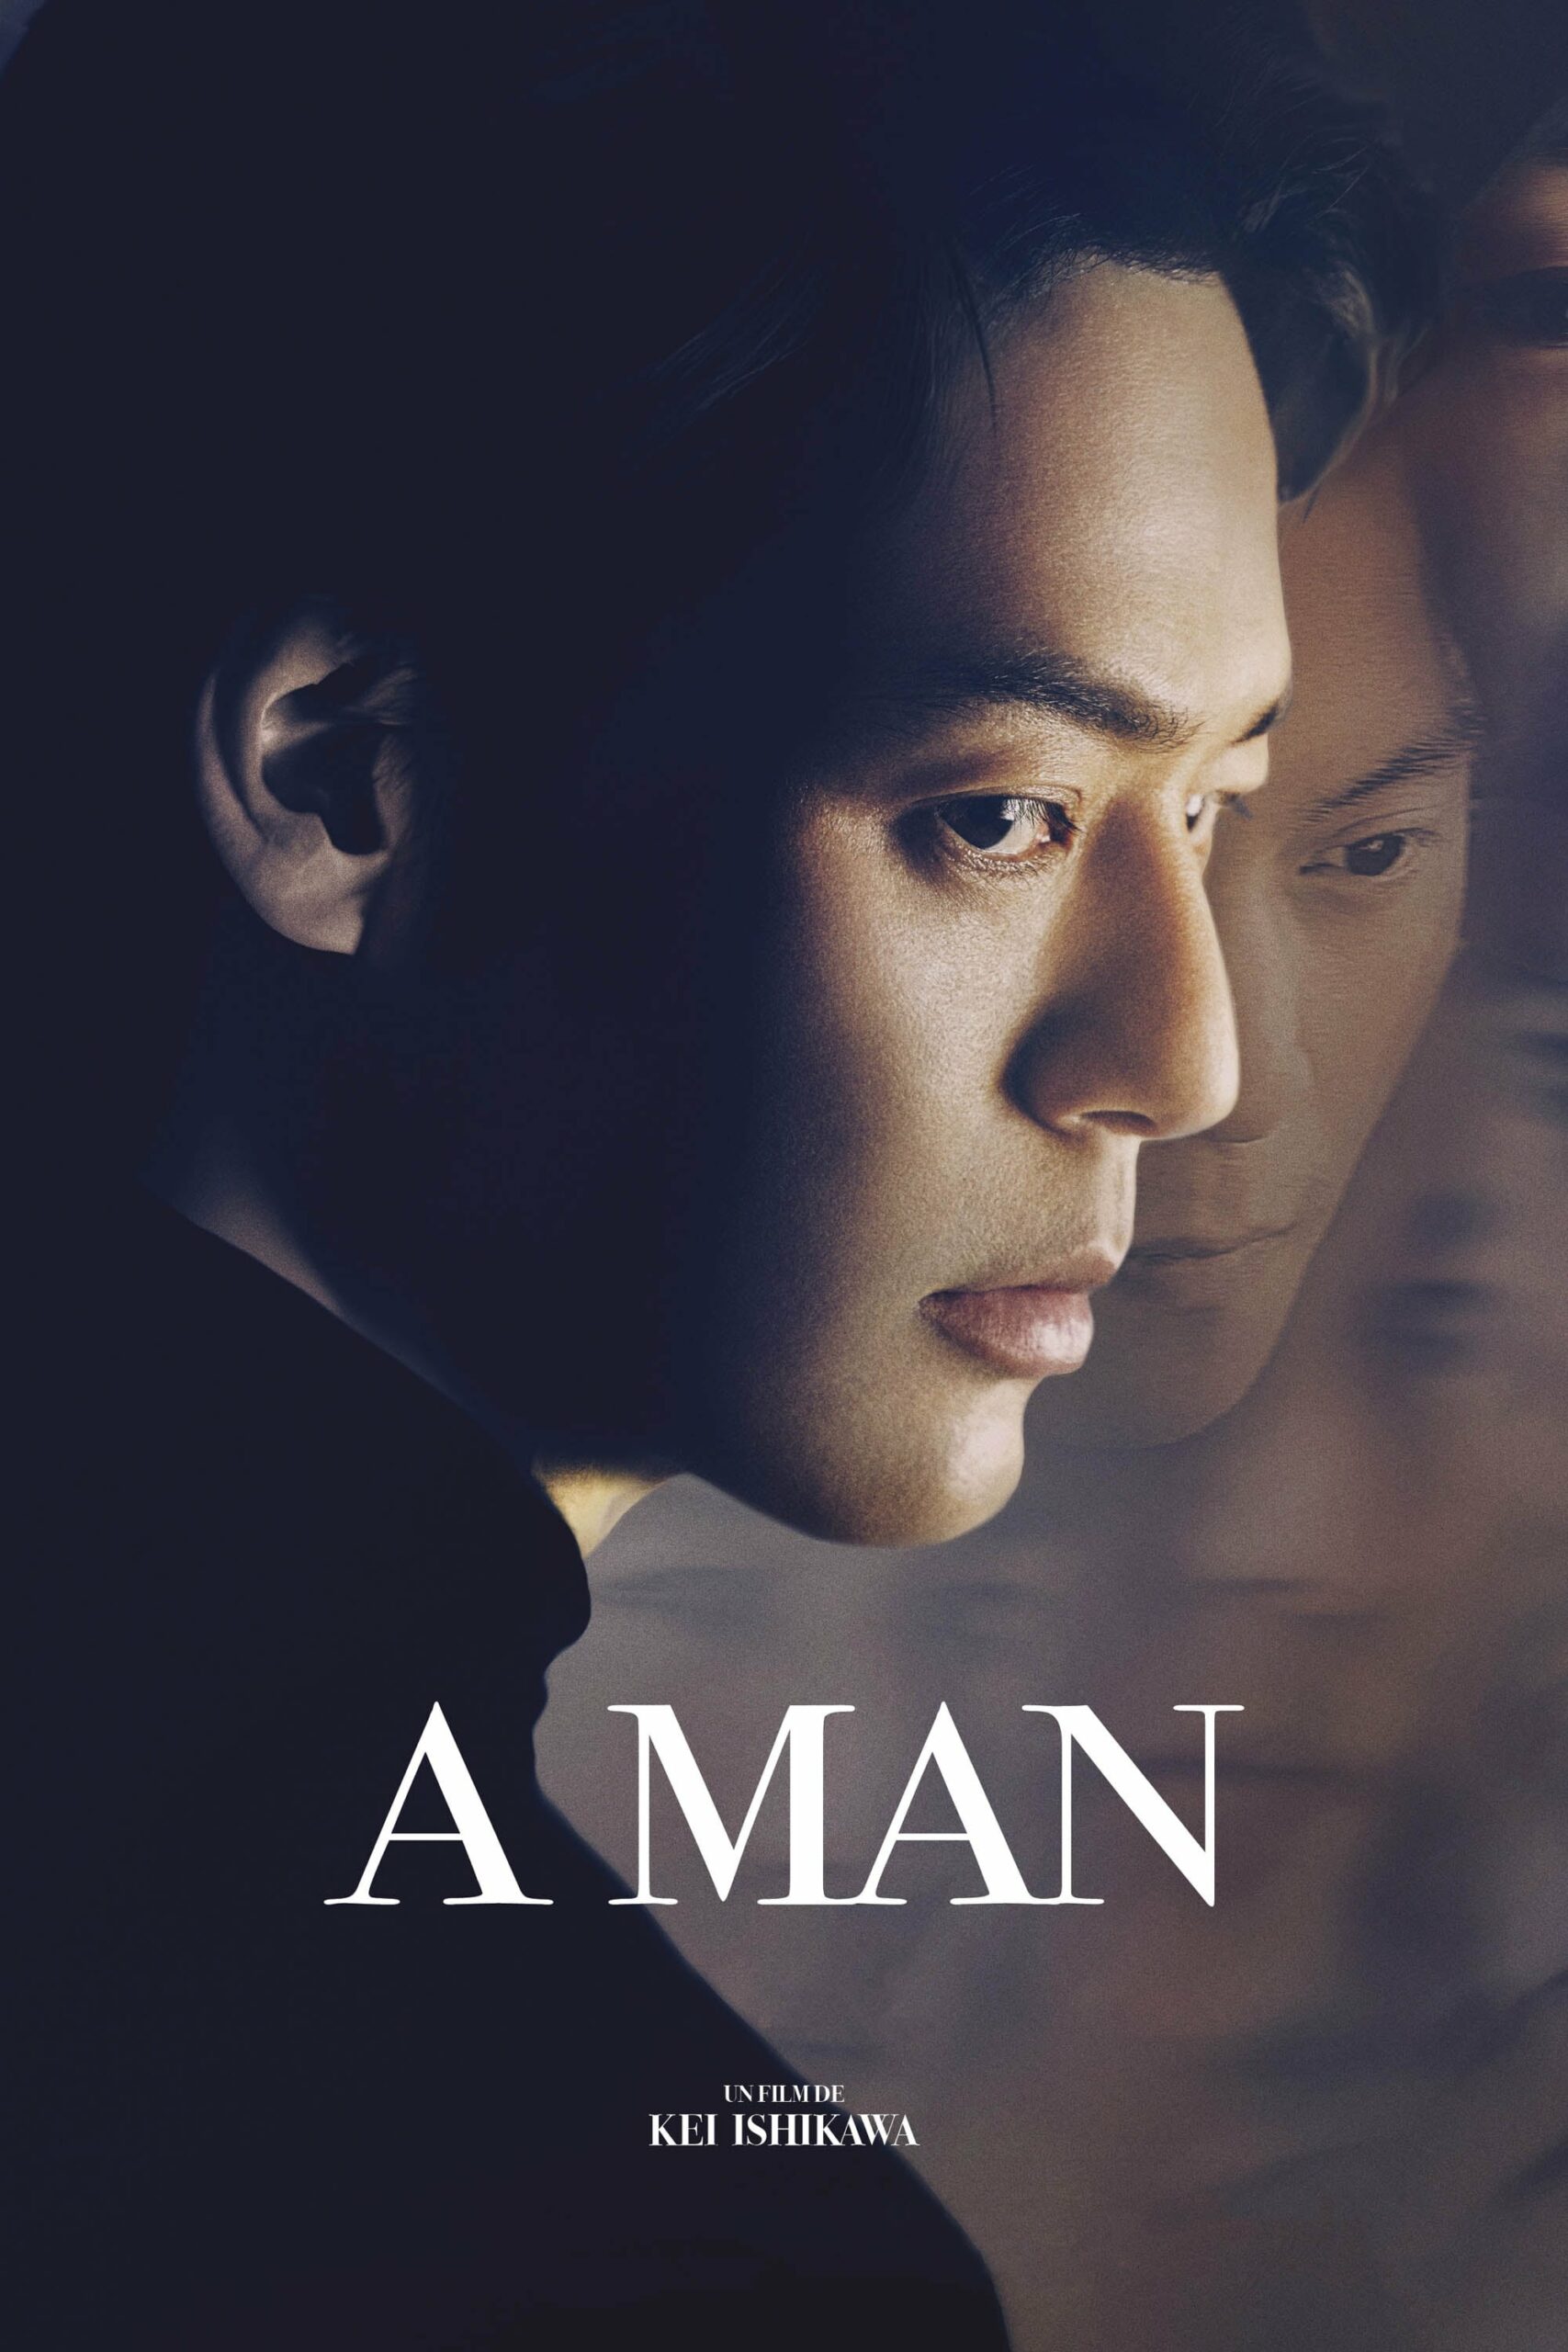 Affiche du film "A man"